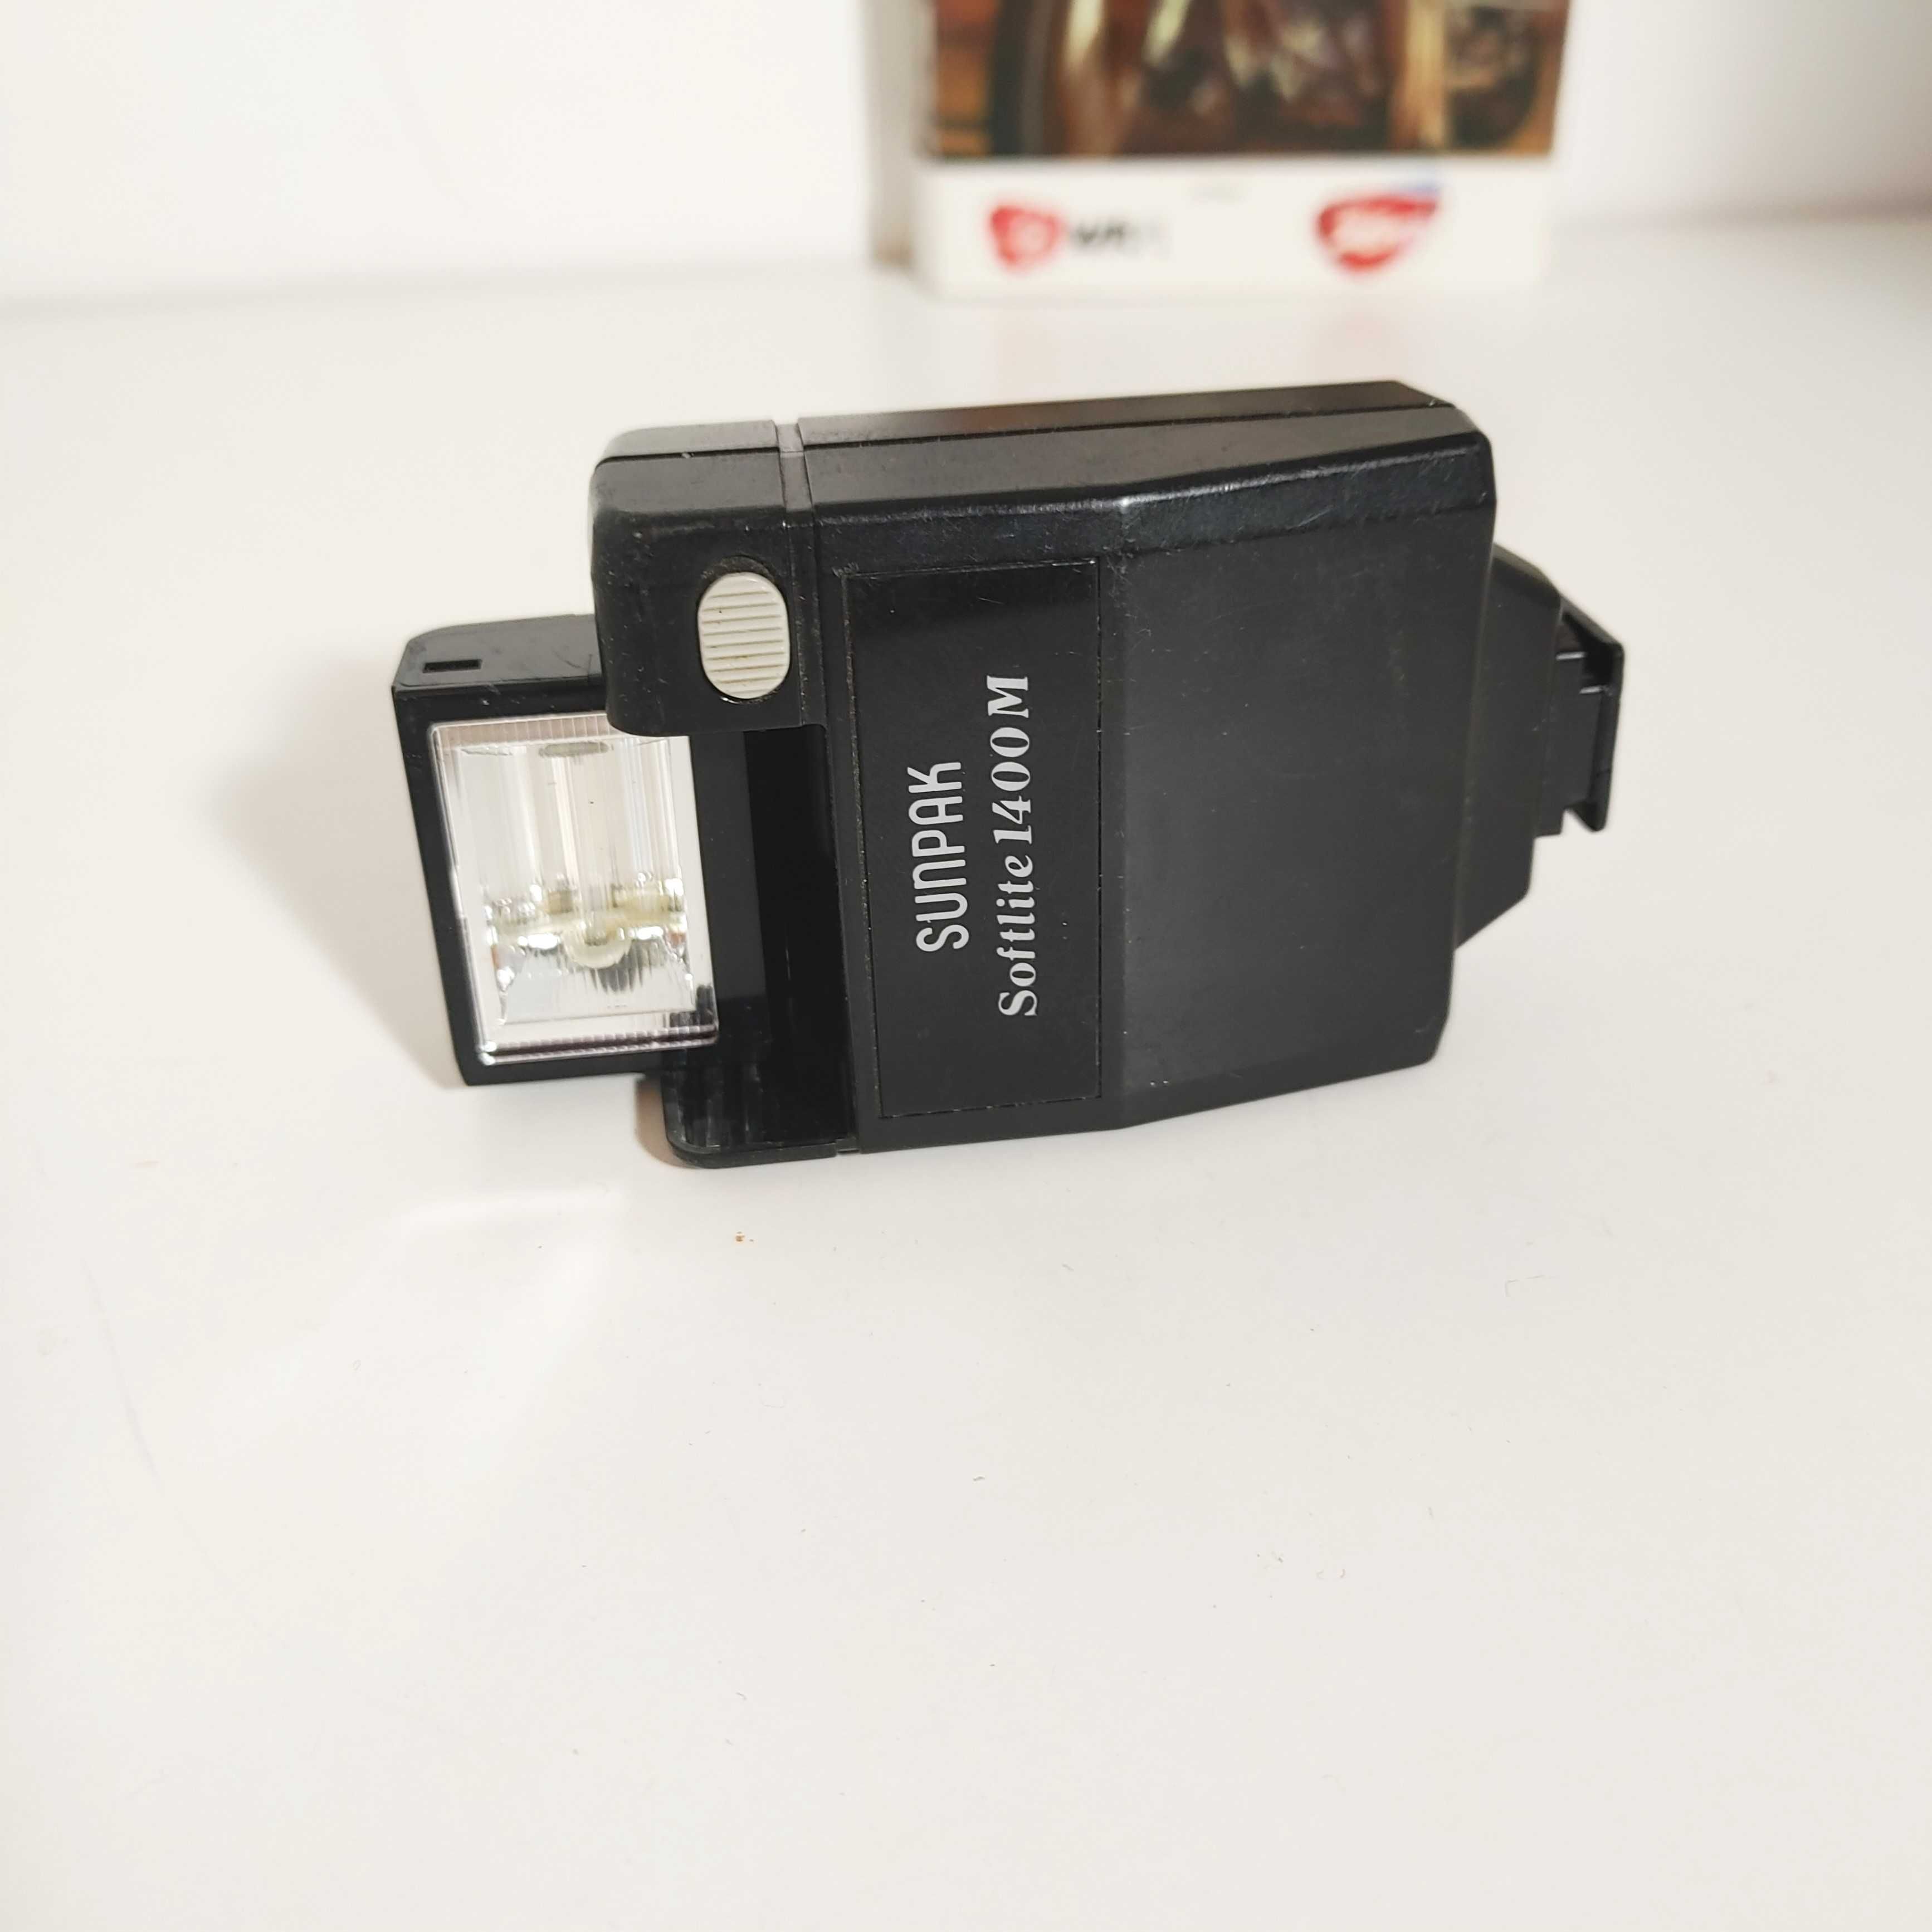 Lampa błyskowa SunPak Softlite 1400 M do klasycznych aparatów foto